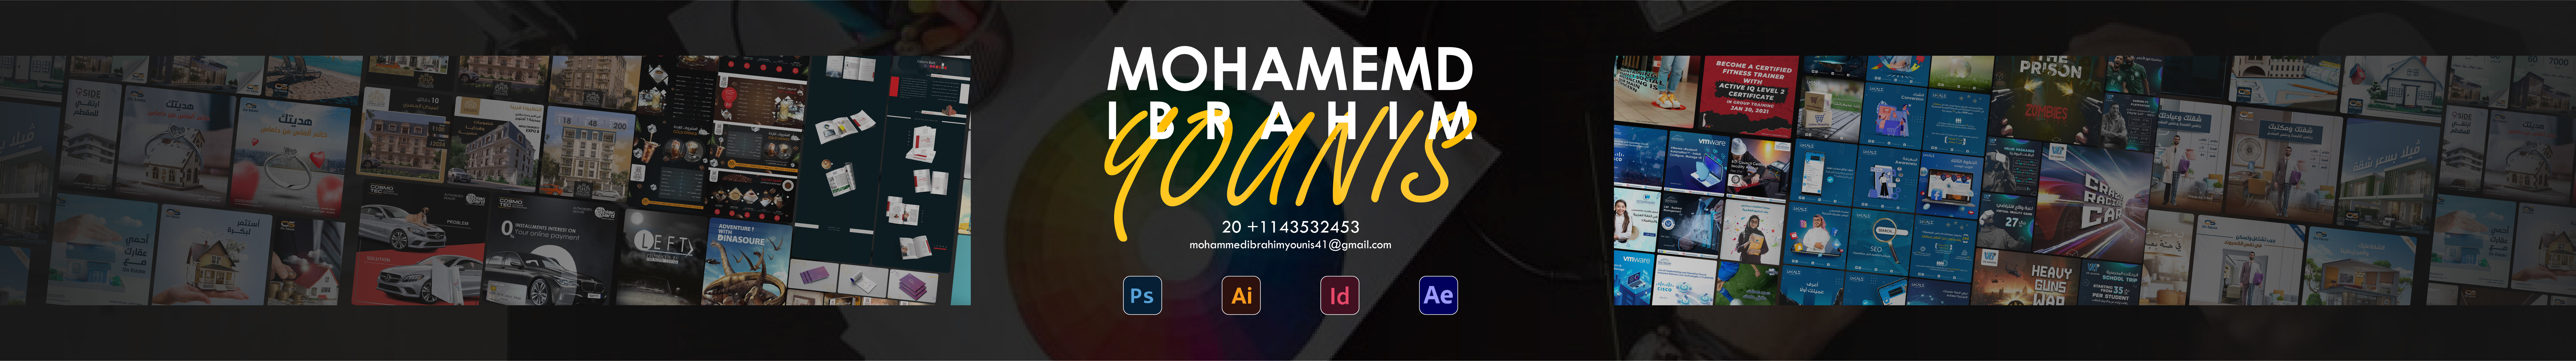 Mohammed Ibrahim's profile banner